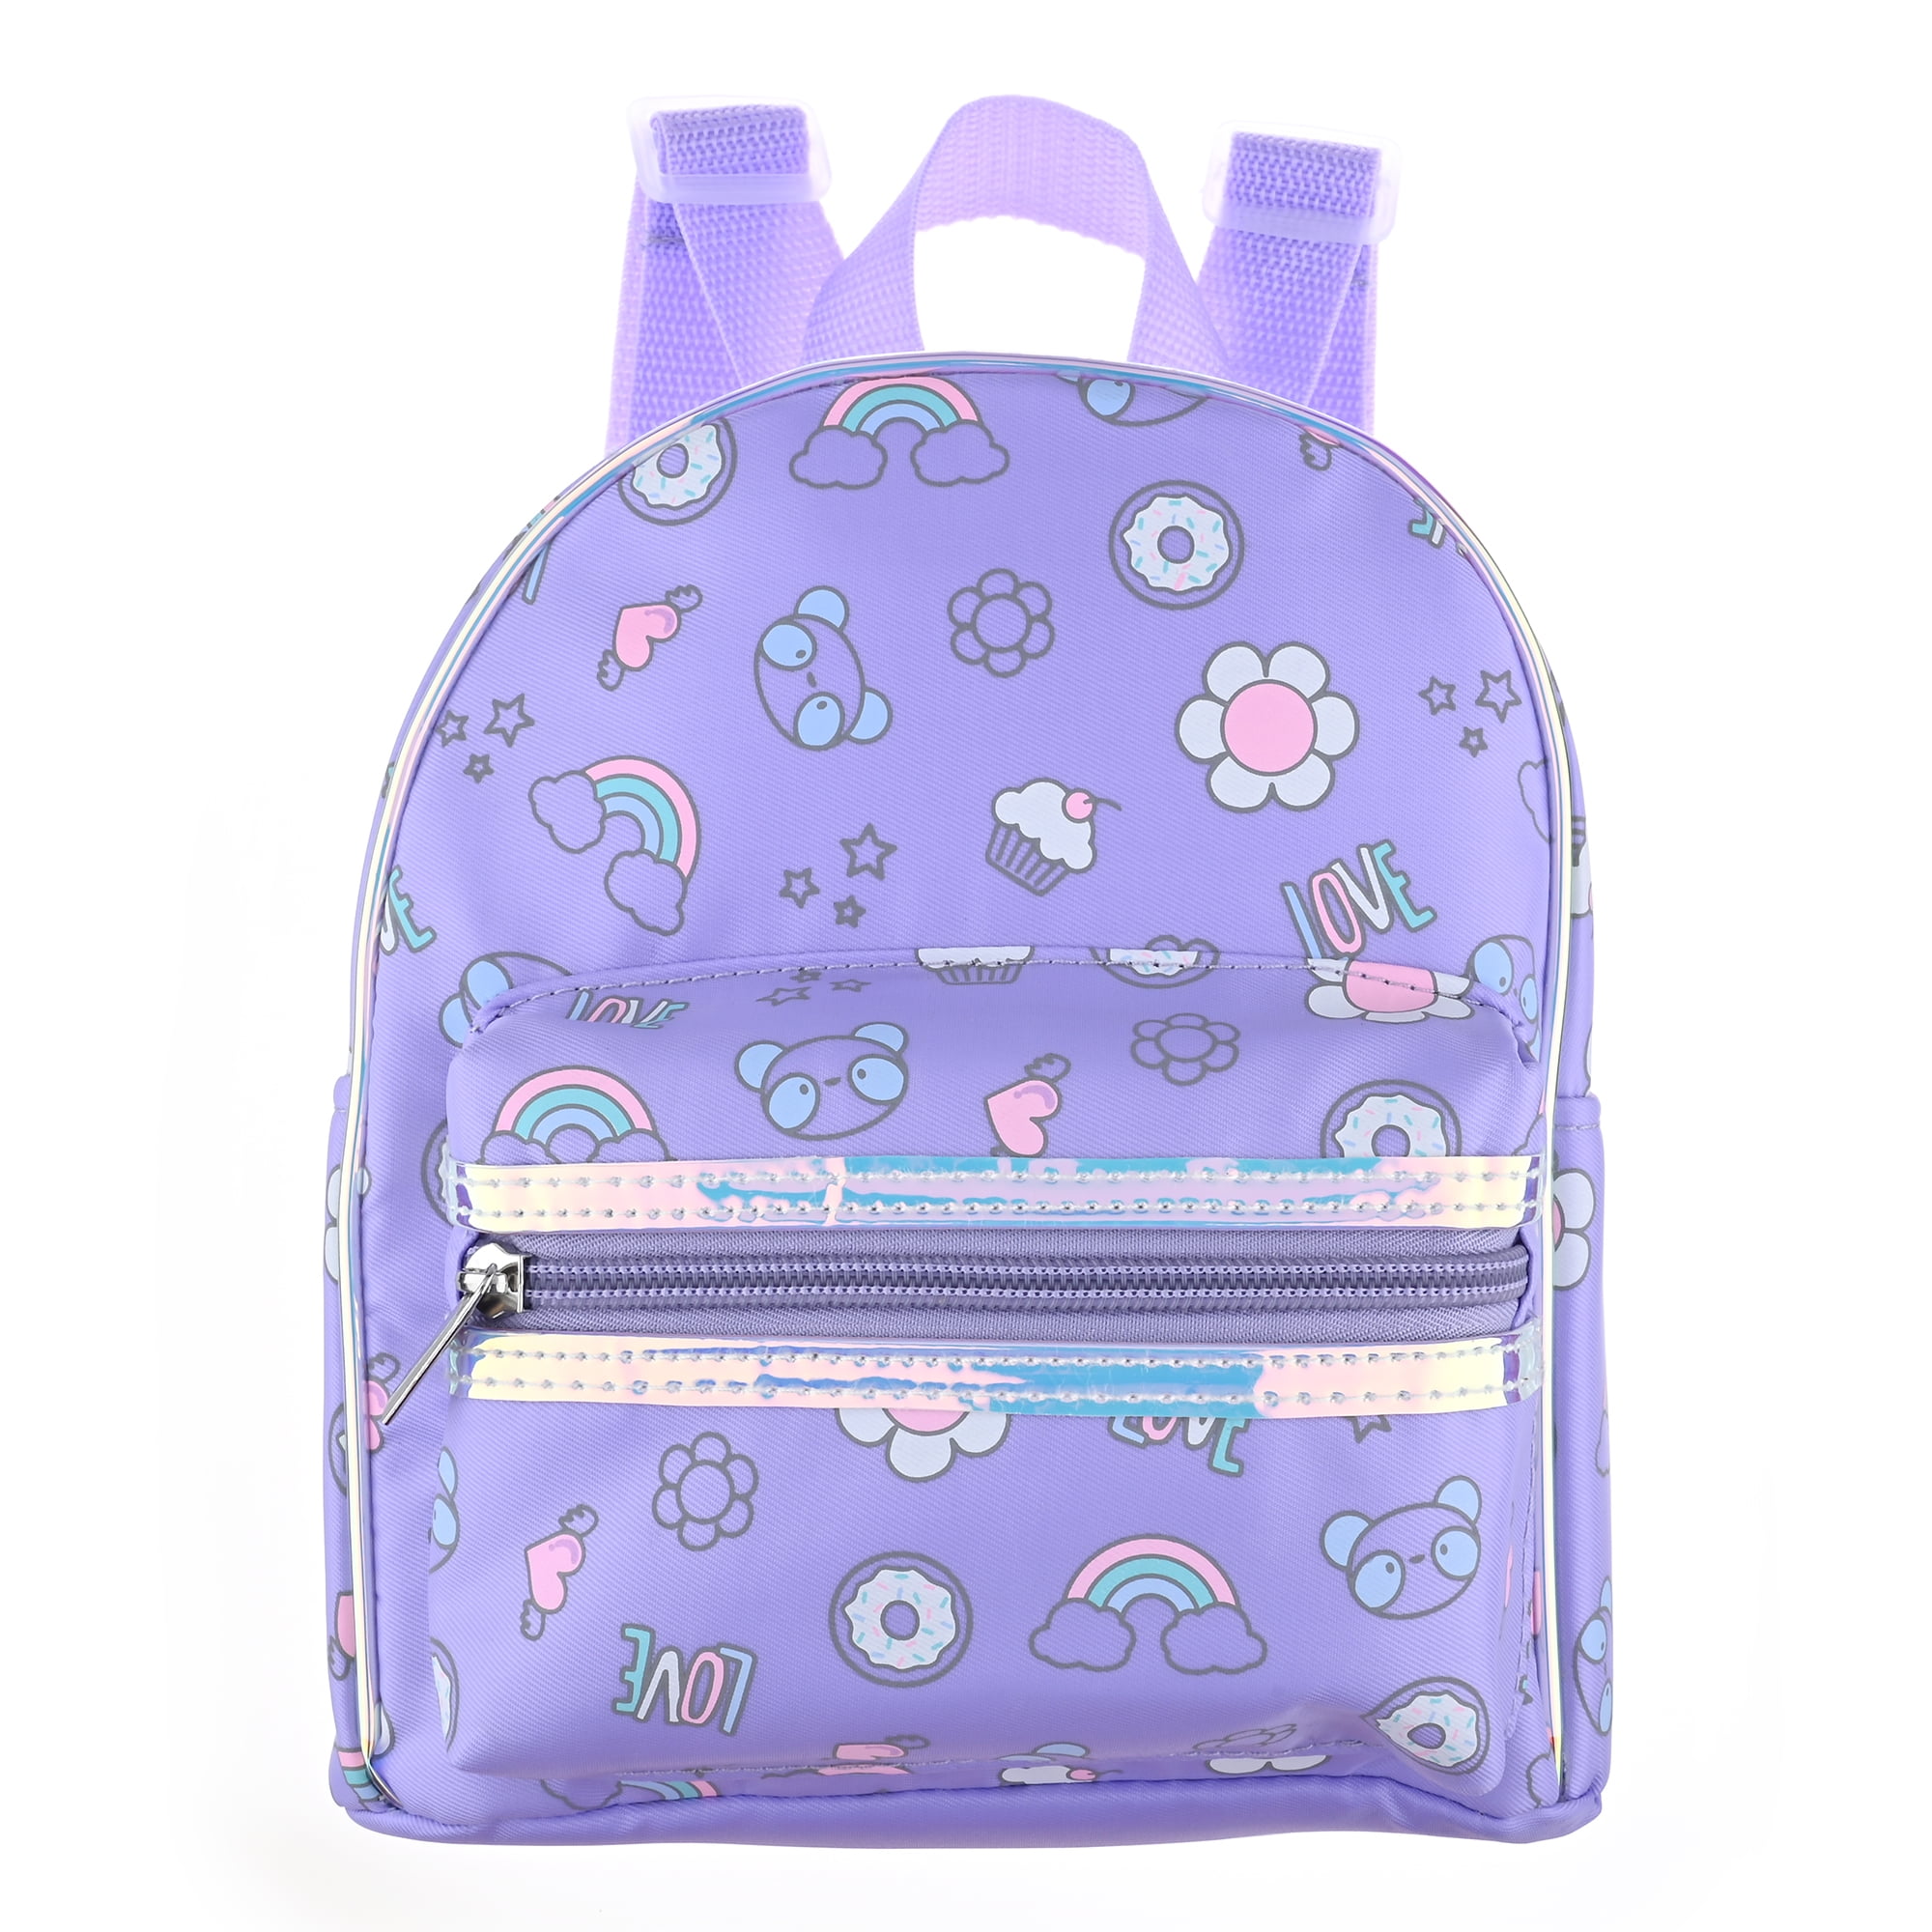 Cheruty Mini Backpack for Women Cute Bowknot Small Backpack Purse Girls  Leather Bookbag Black - Walmart.com